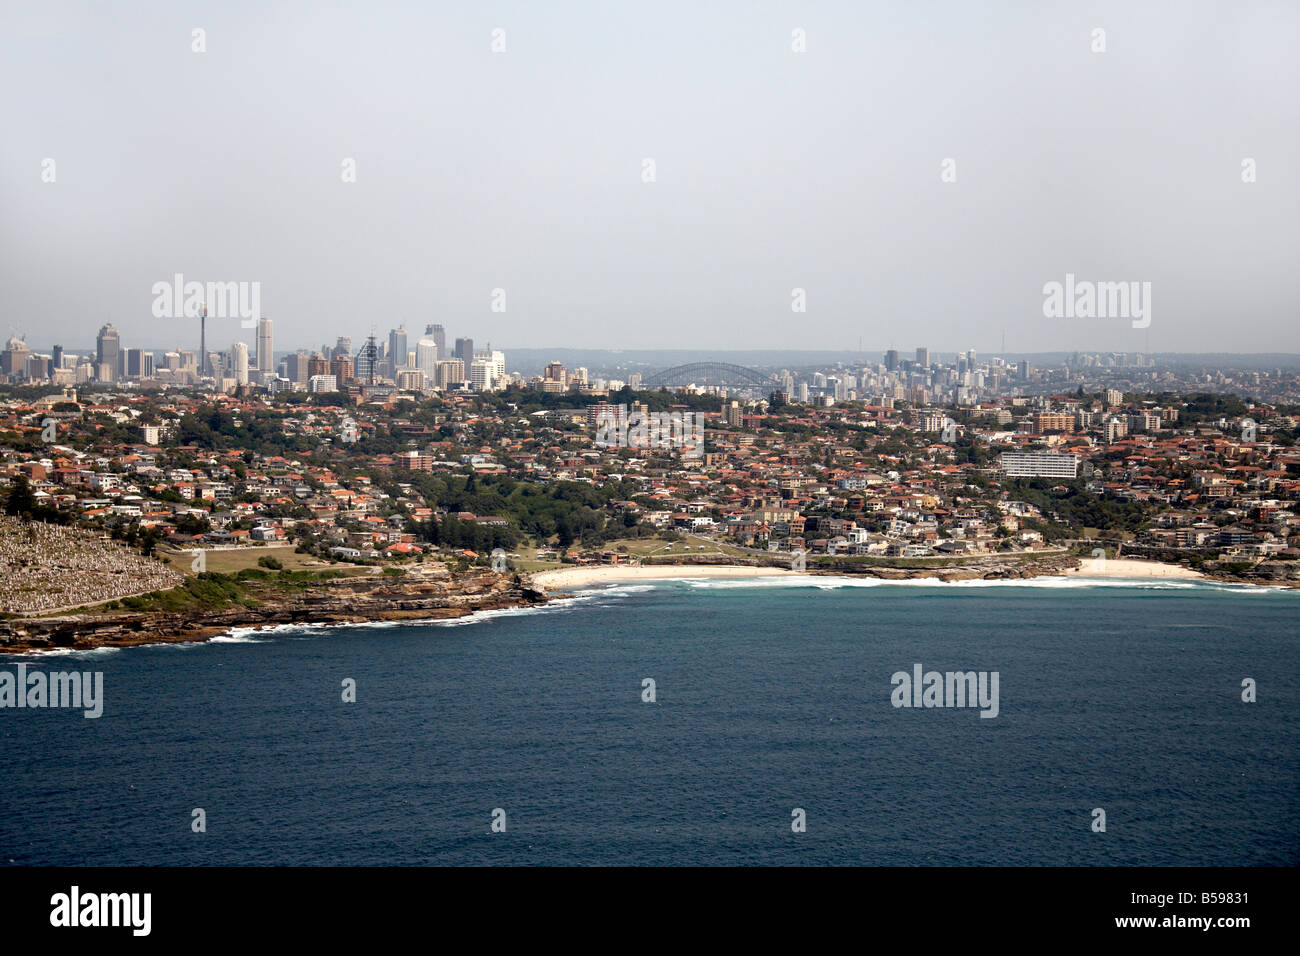 Vista aérea del noroeste de la ciudad de Nelson Bay scyscrapers y el Puente del Puerto de Sydney, NSW, Australia distancia oblicua de alto nivel Foto de stock